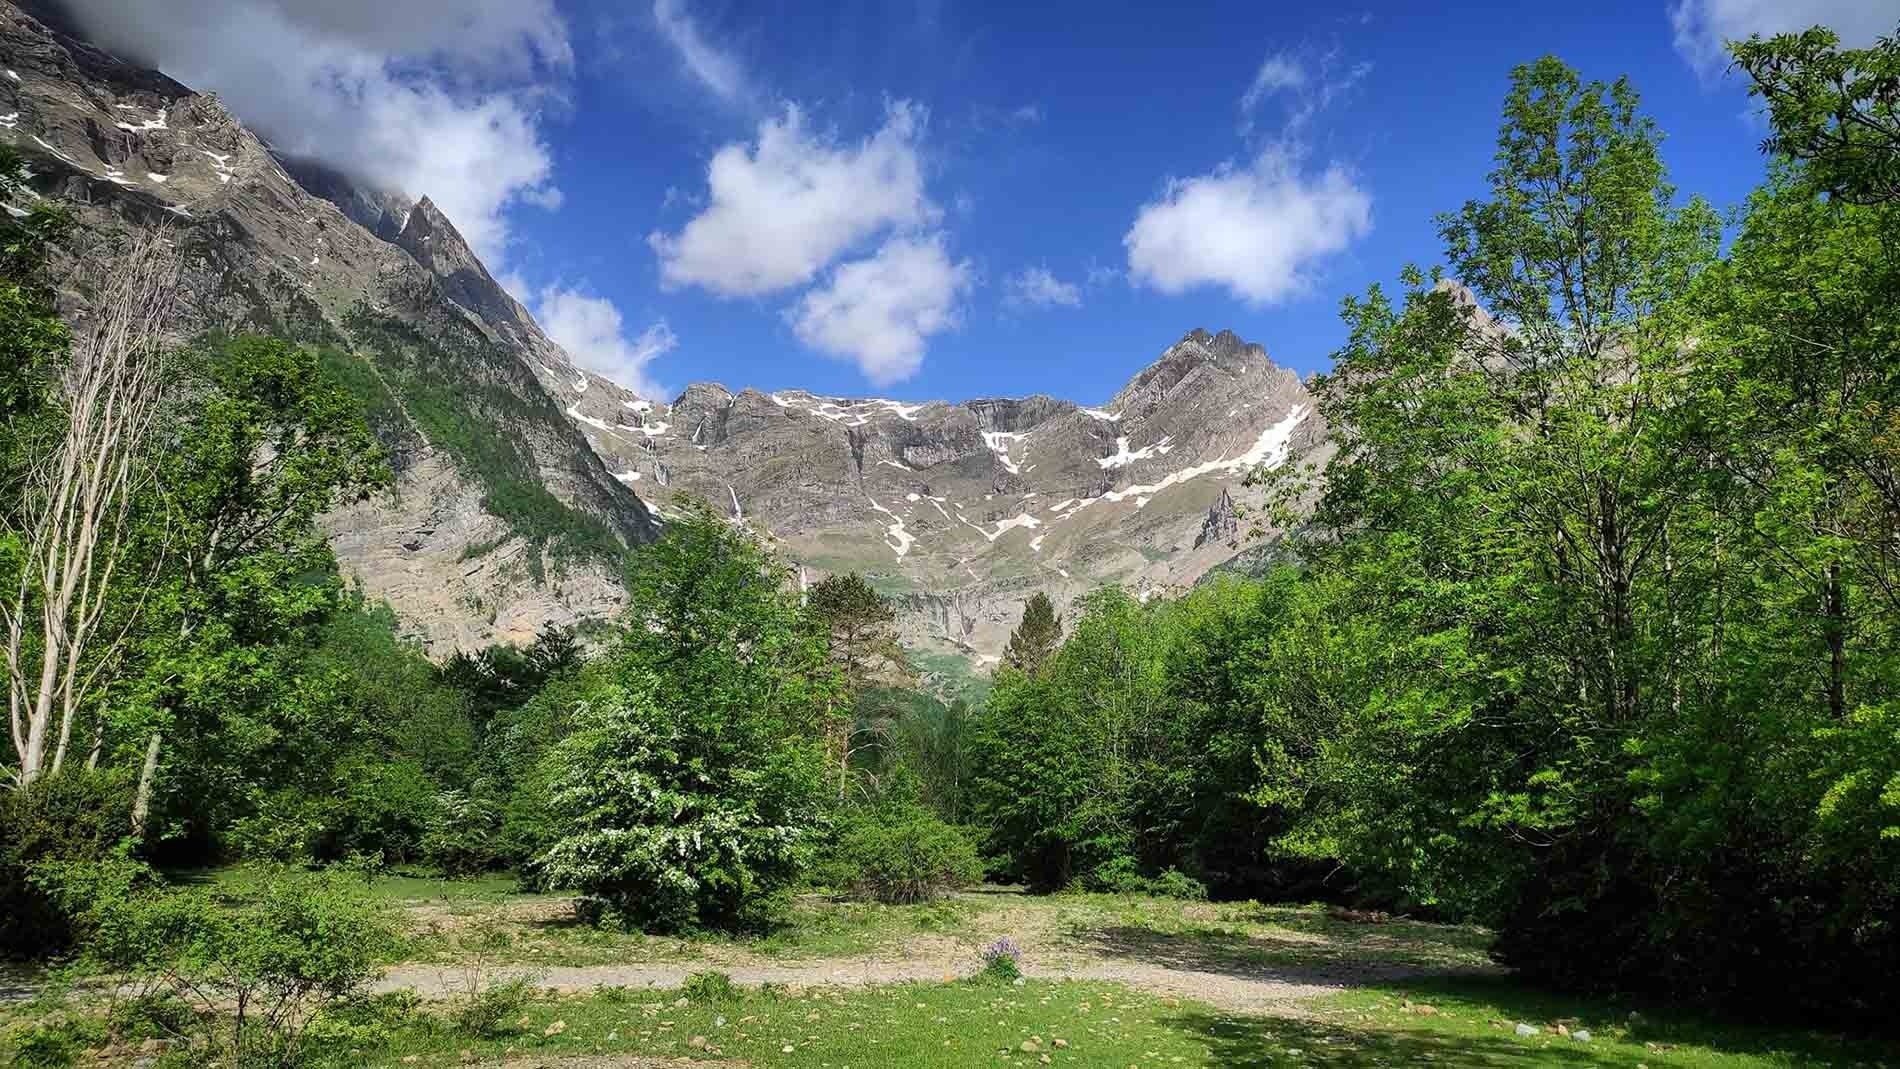 un hombre de pie en la cima de una montaña mirando un valle